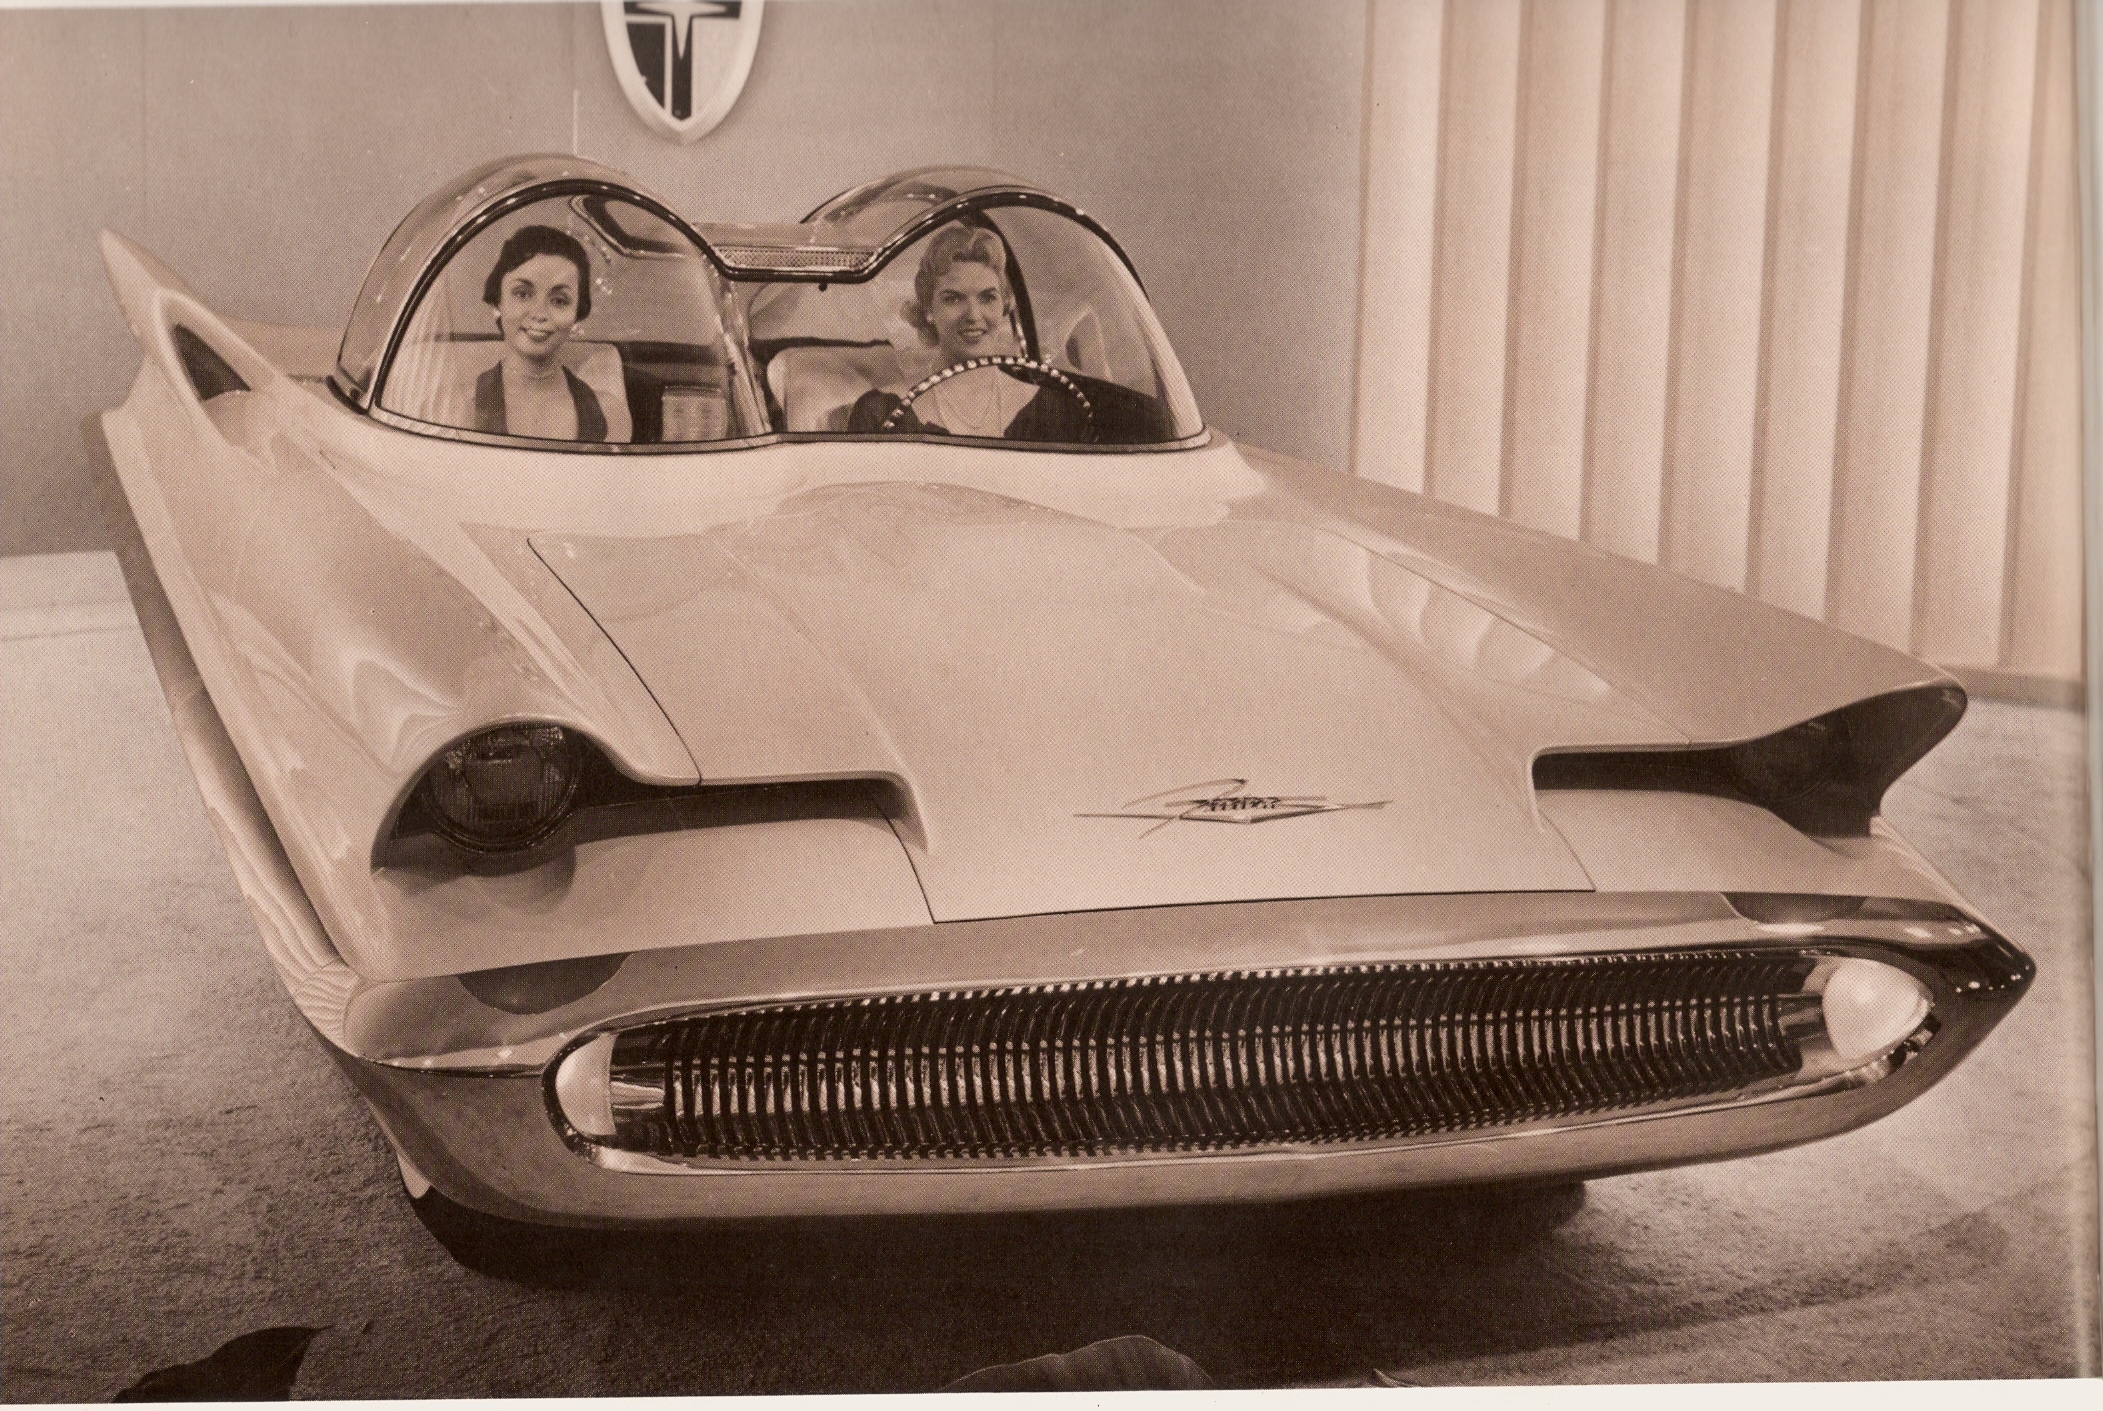 Lincoln Futura (Ghia), 1955